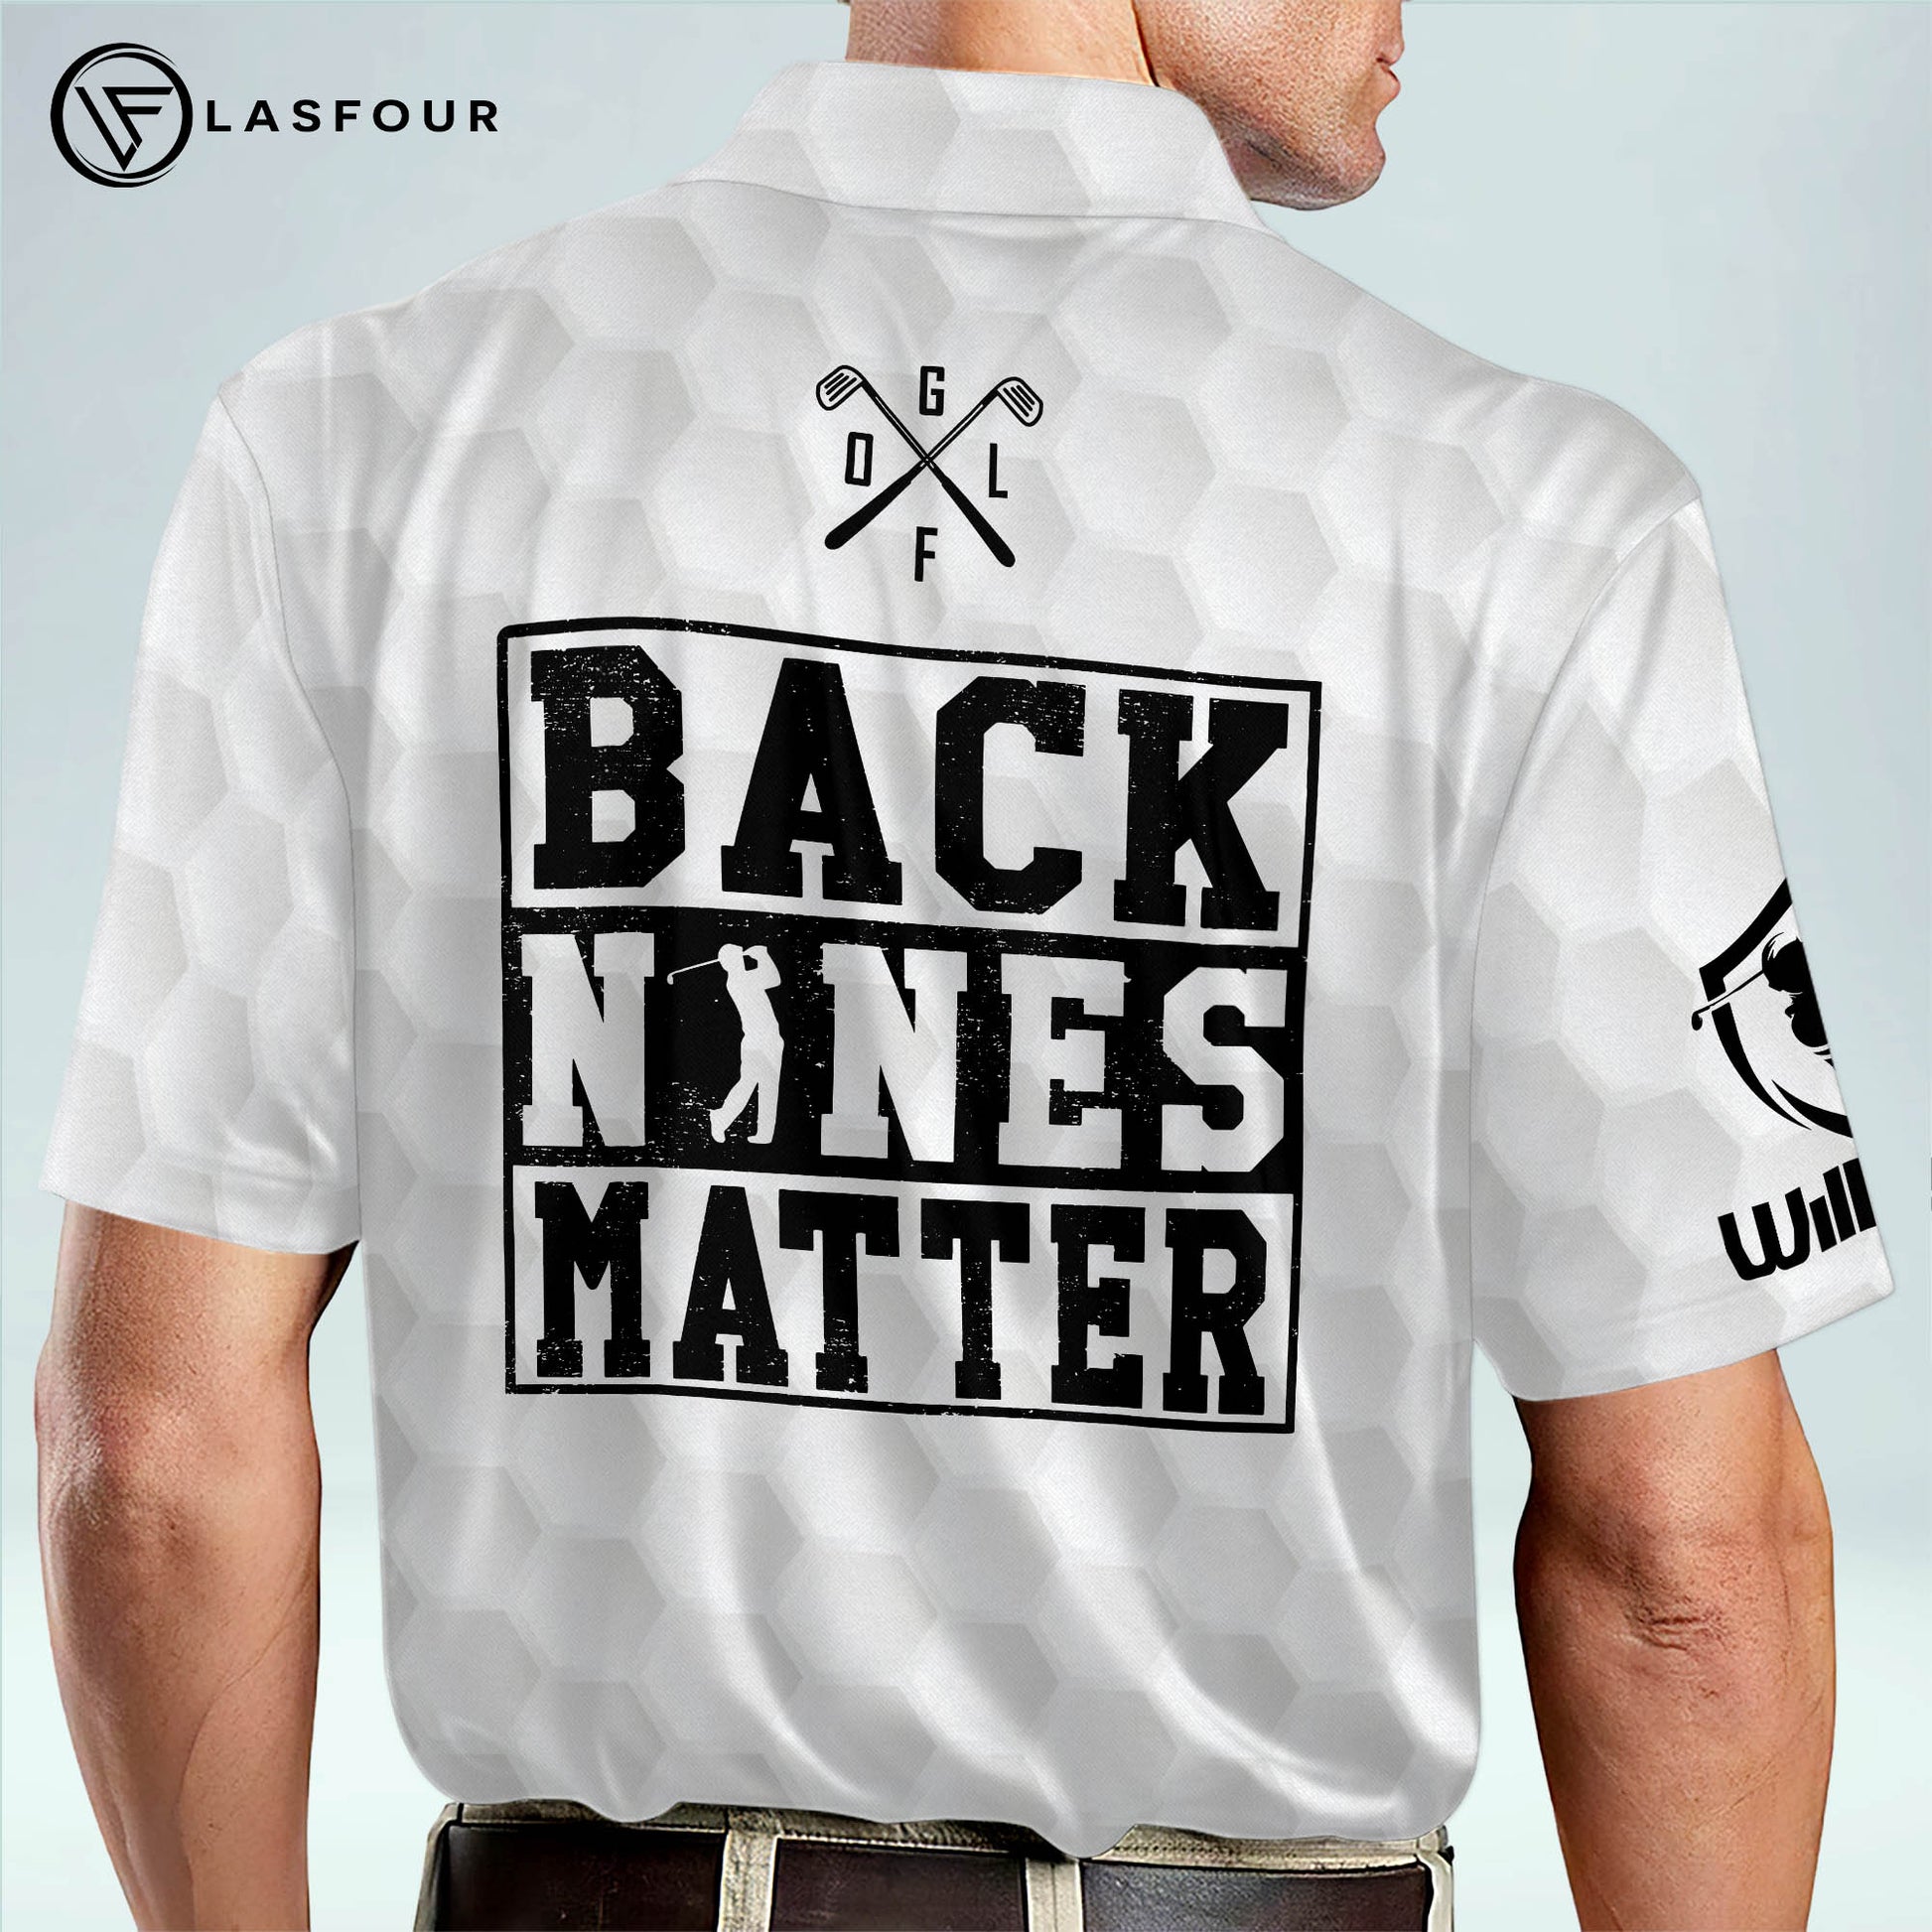 LASFOUR Personalized Unique Funny Golf Cap for Men, Back Nines